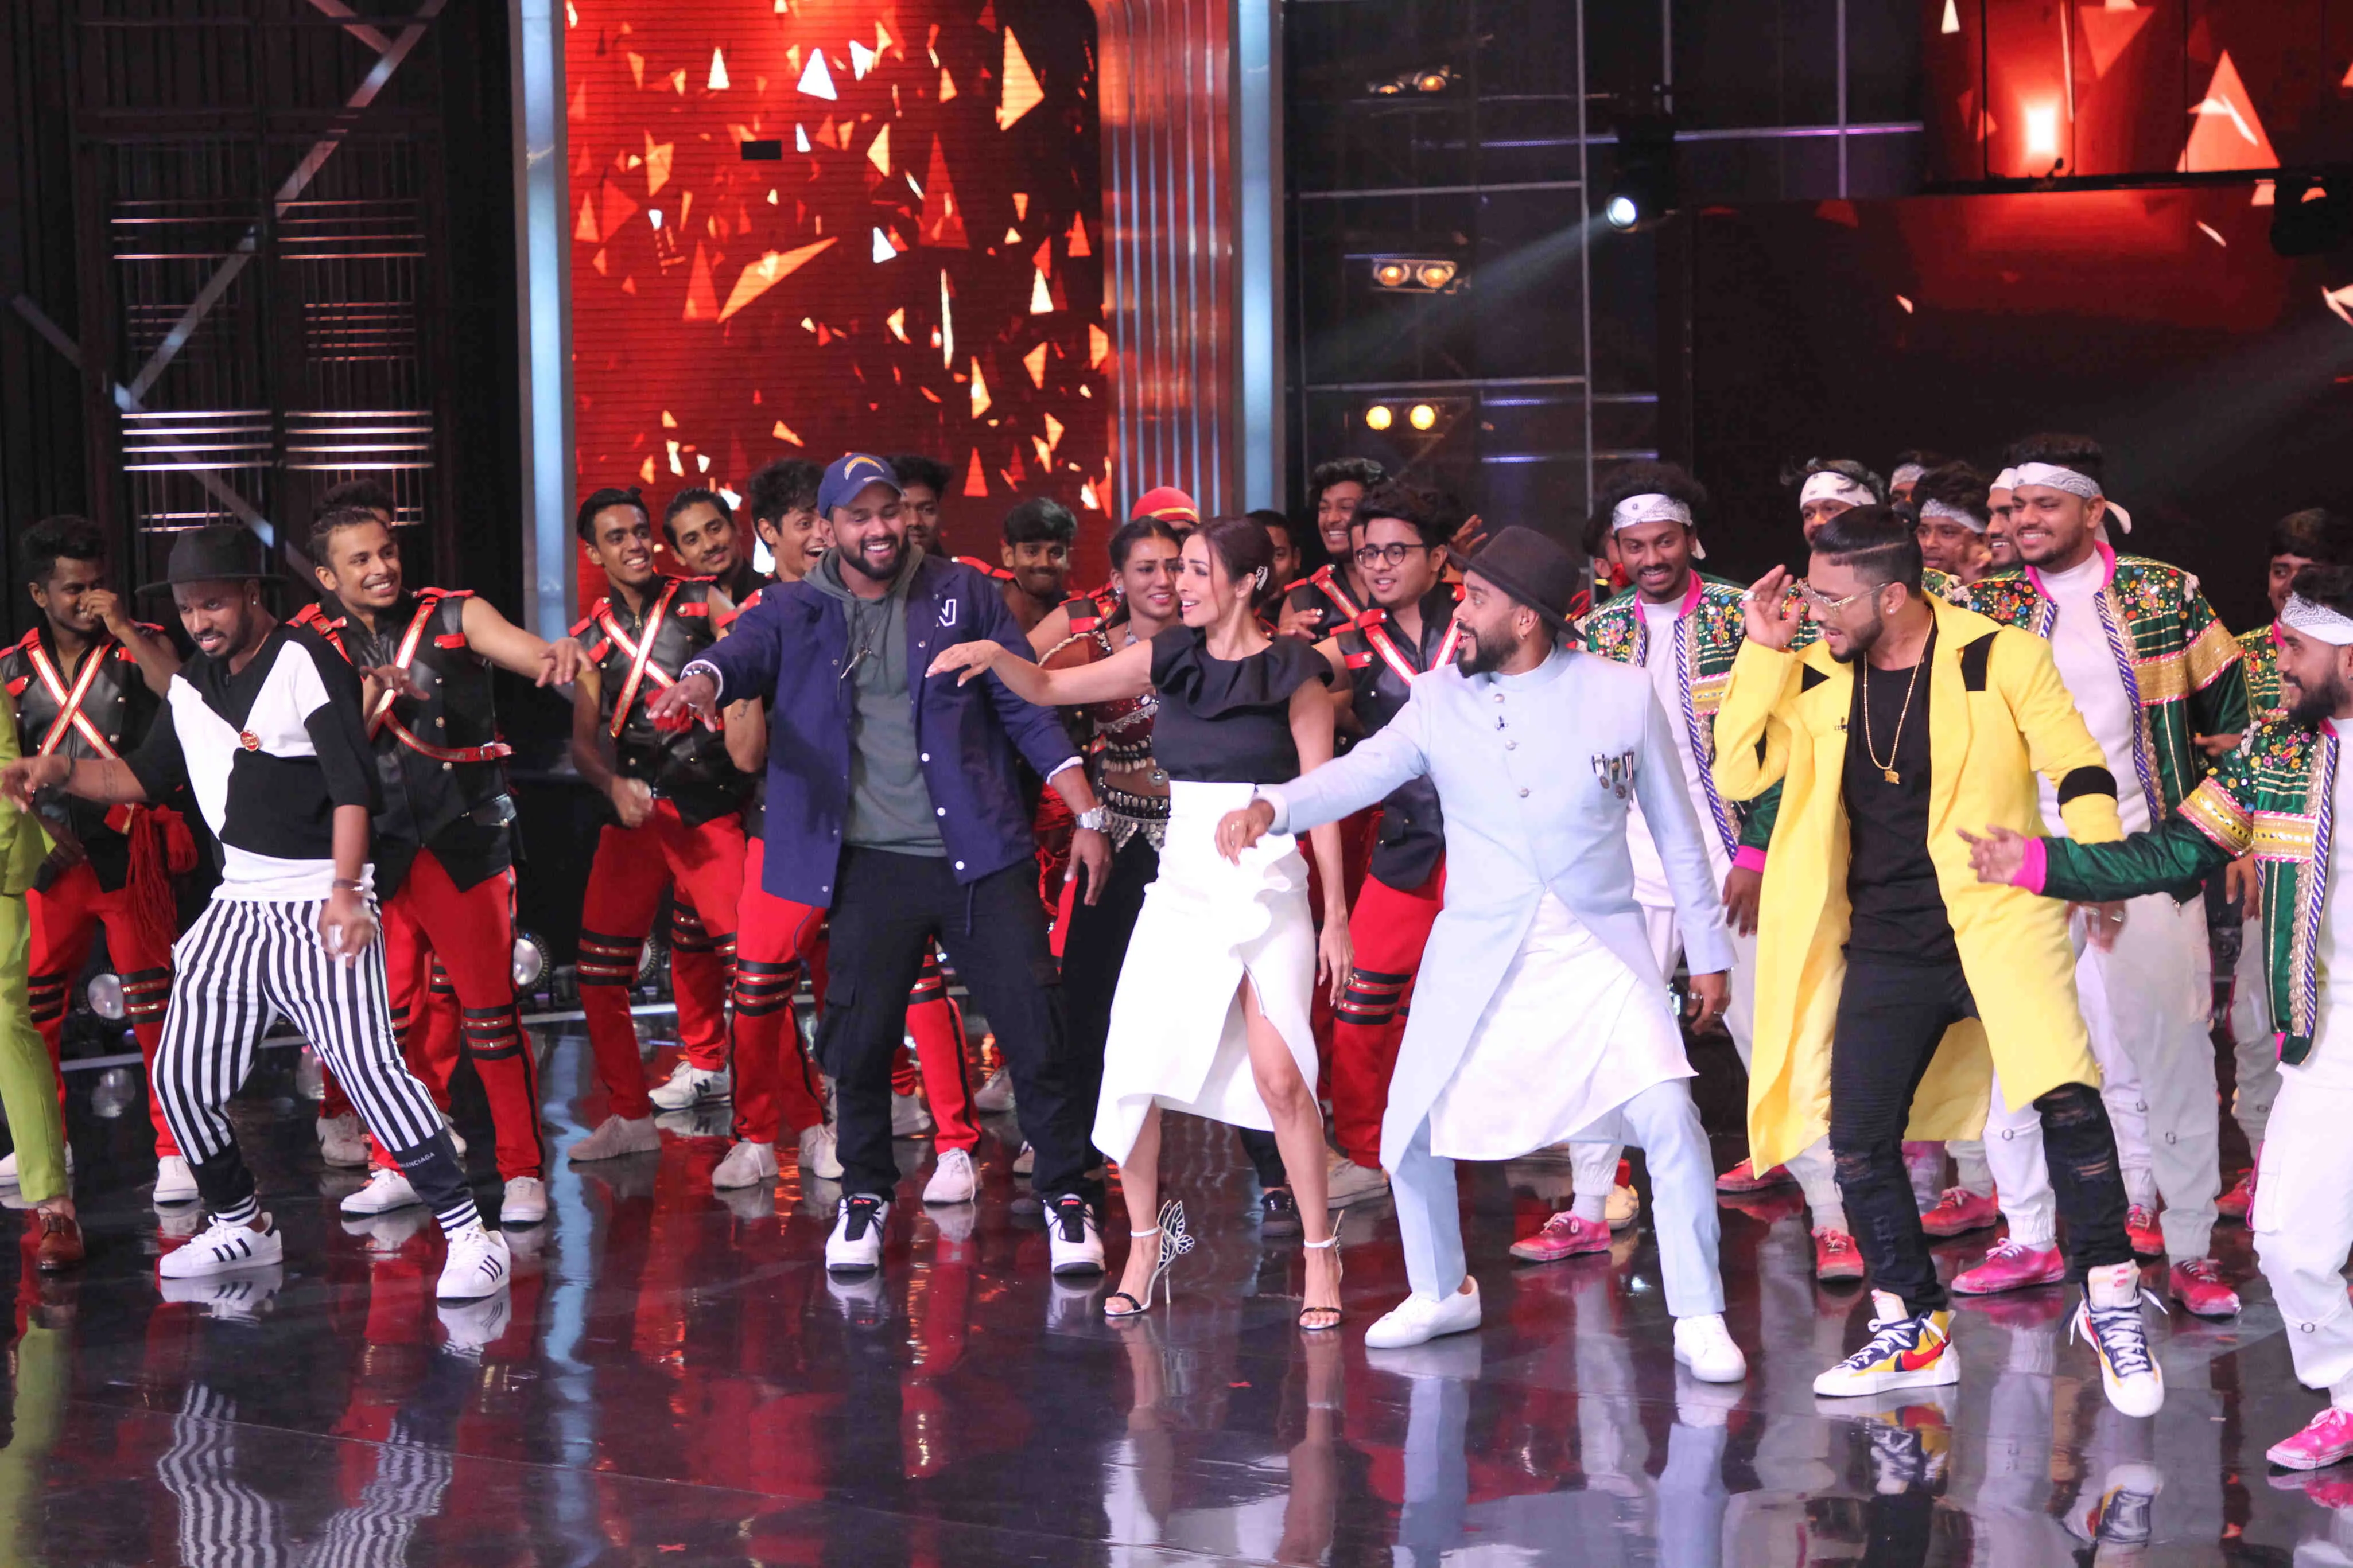 डांस इंडिया डांस के सेट पर मलाइका ने किया अपने फेमस गाने छैंया छैंया पर डांस